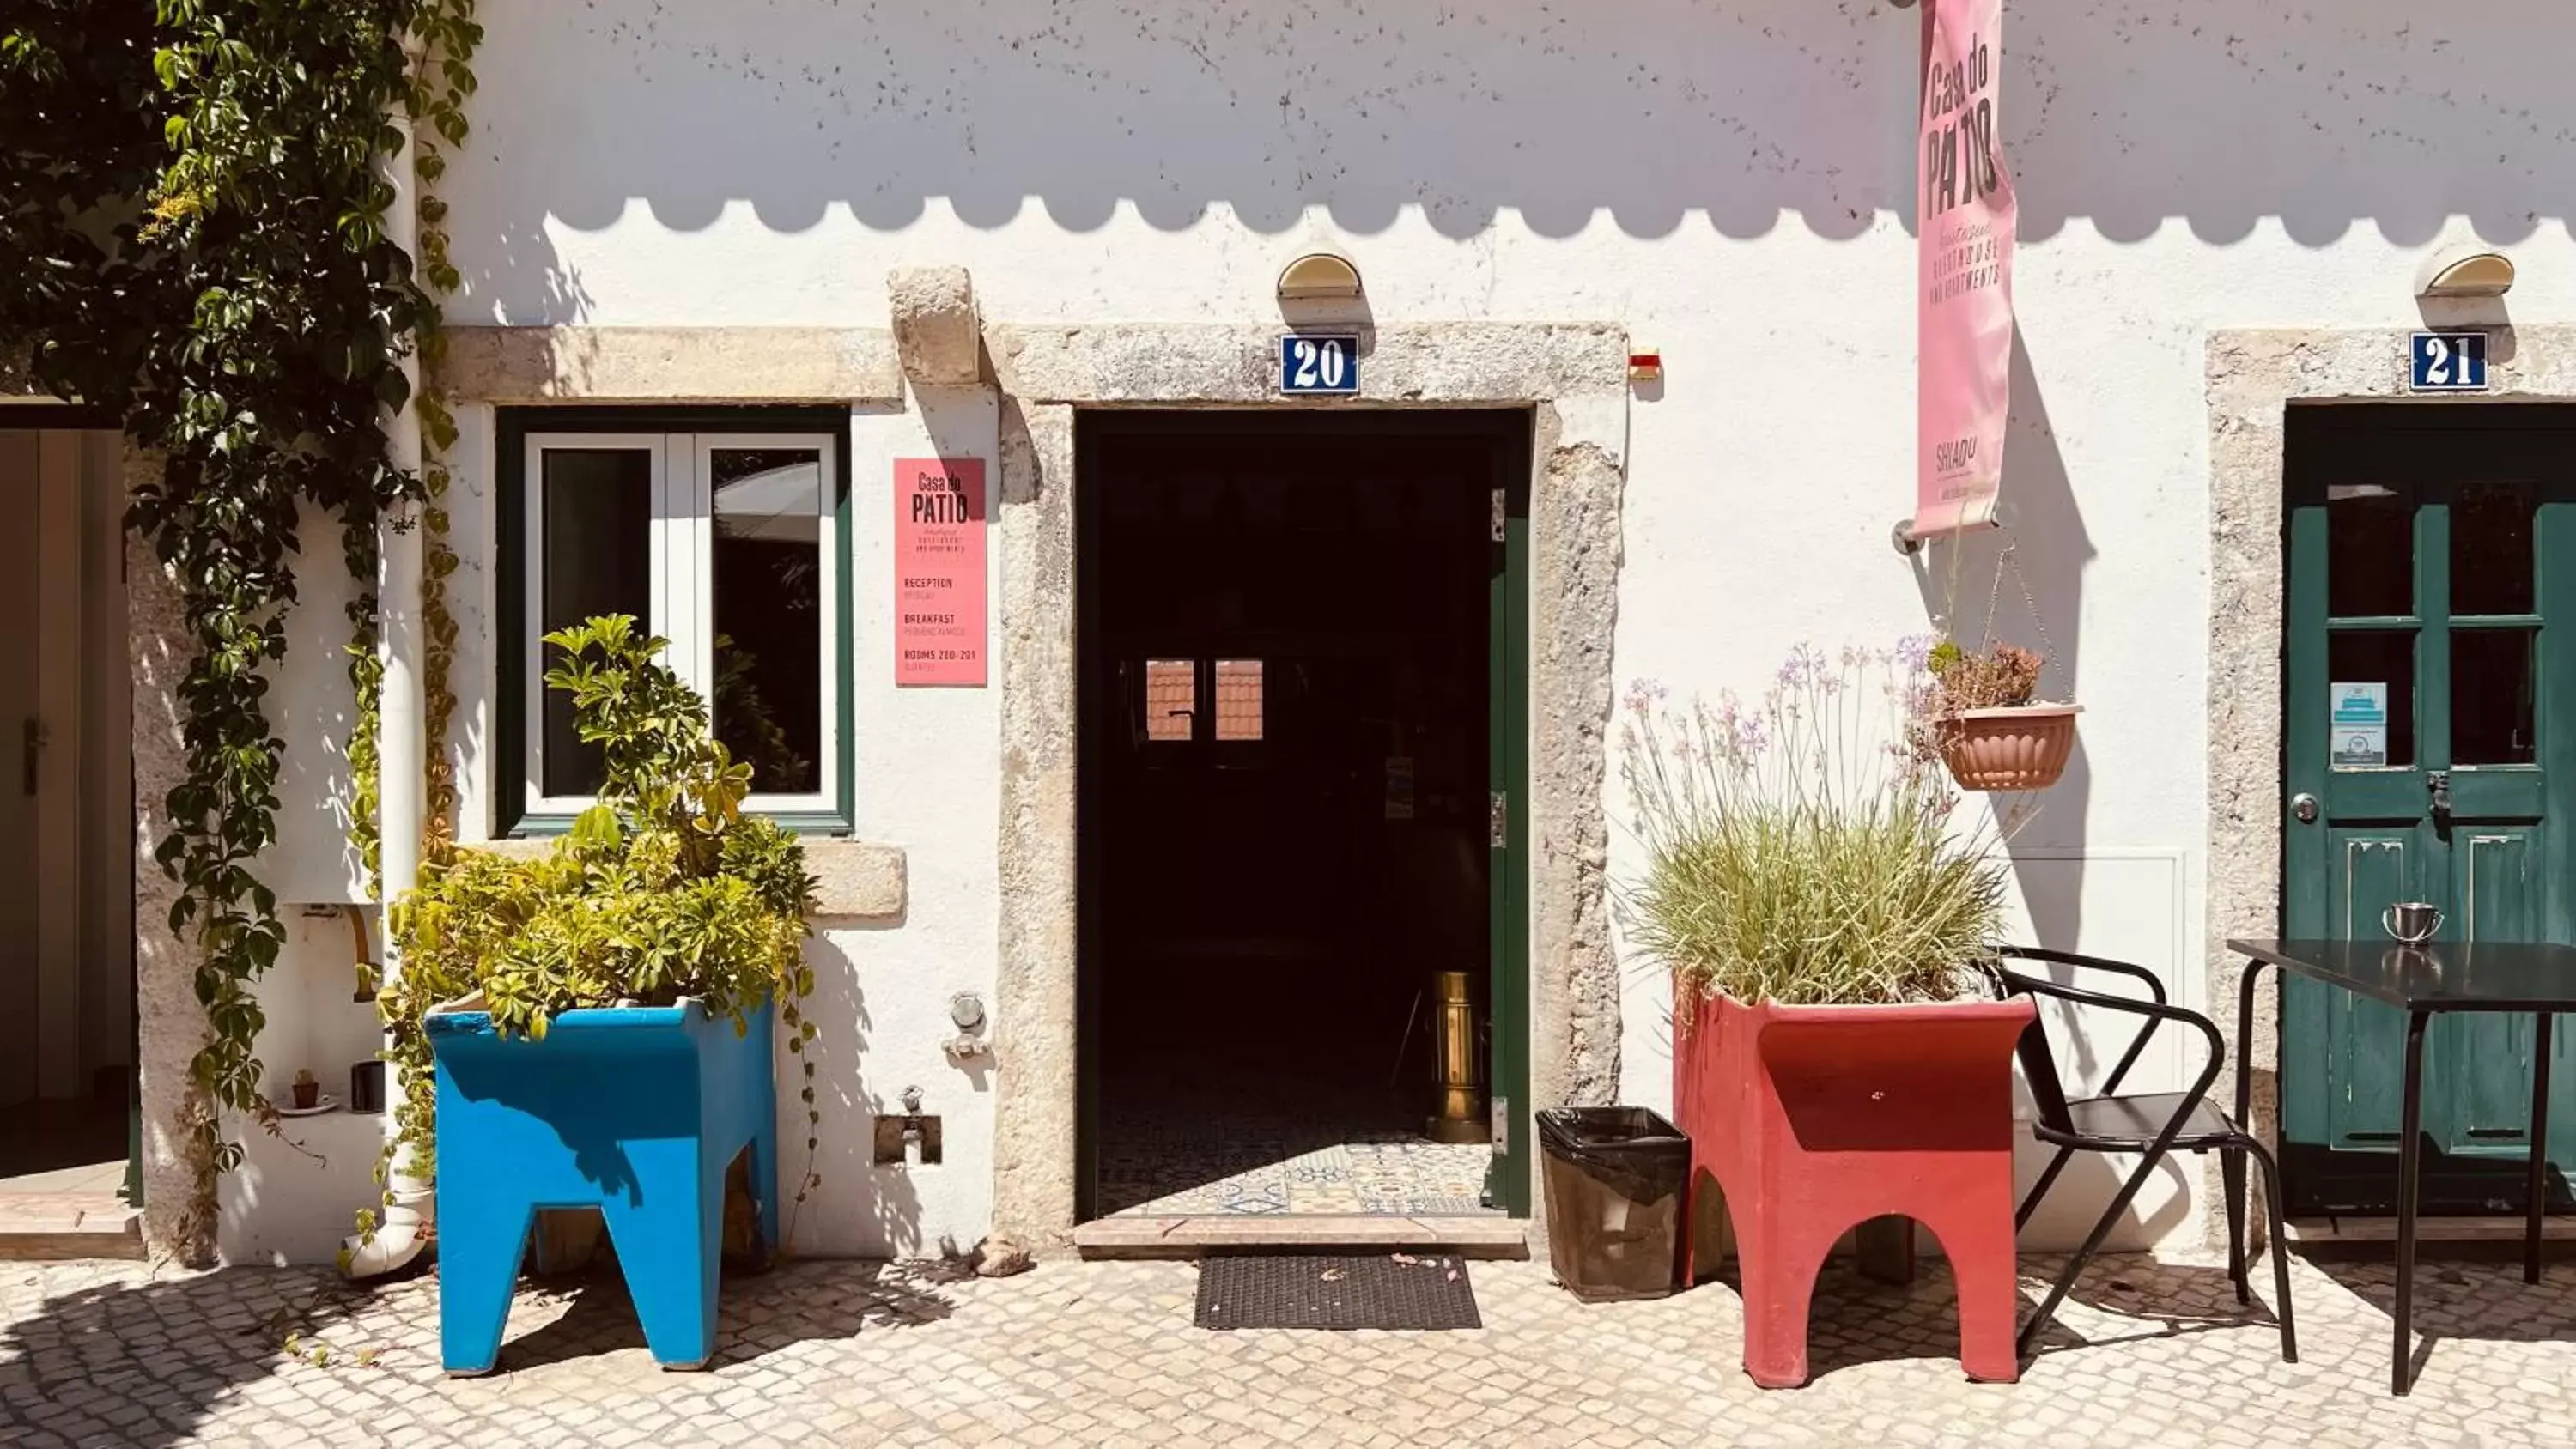 Facade/entrance in Casa do Patio by Shiadu